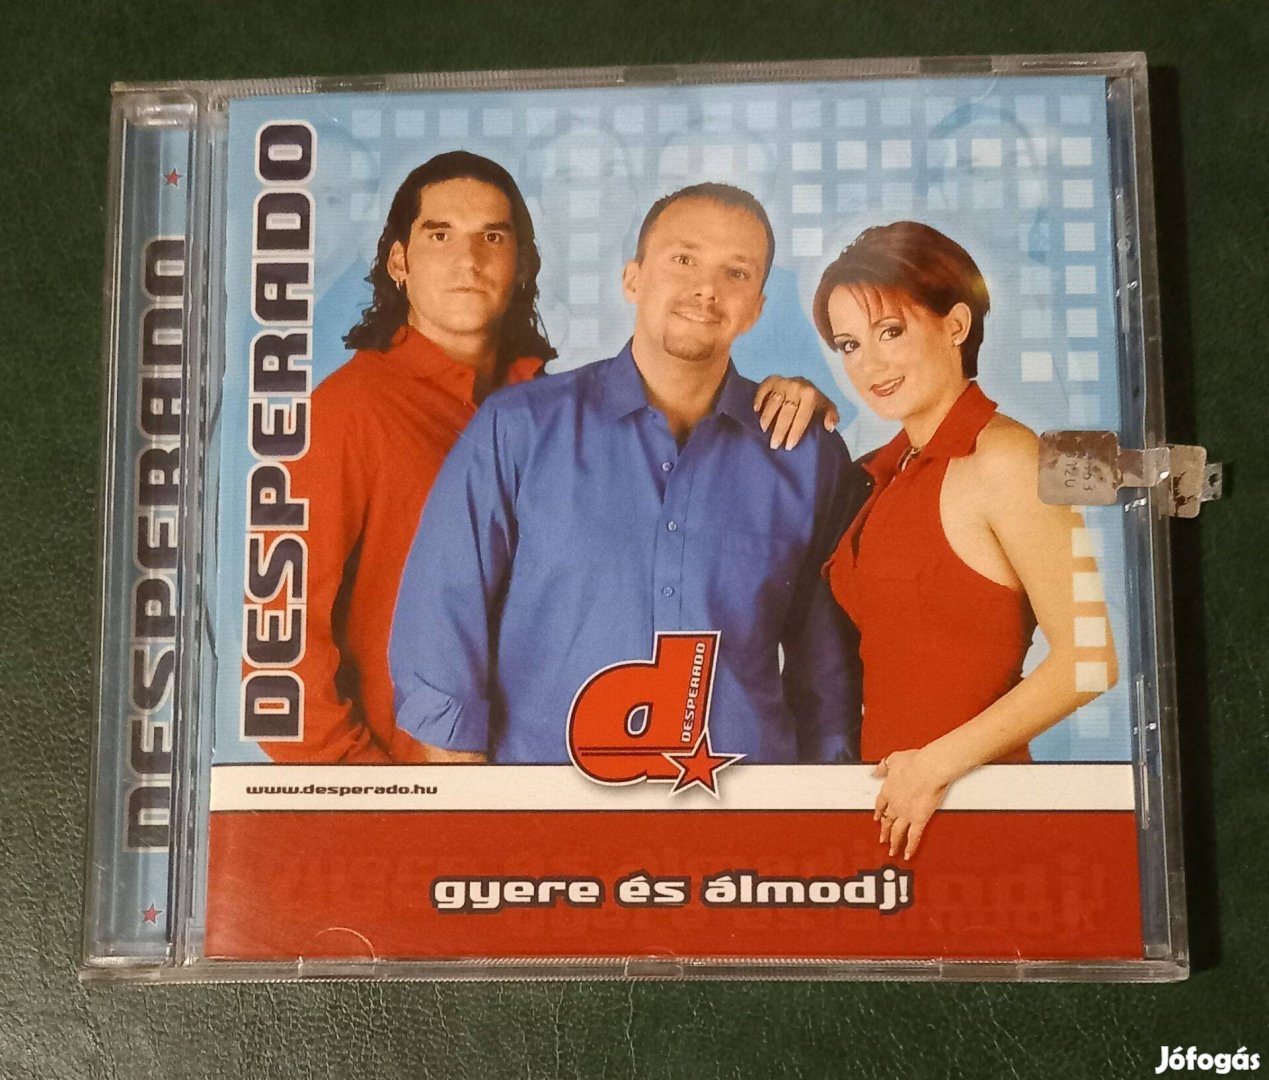 Desperado-Gyere és álmodj ( CD album )